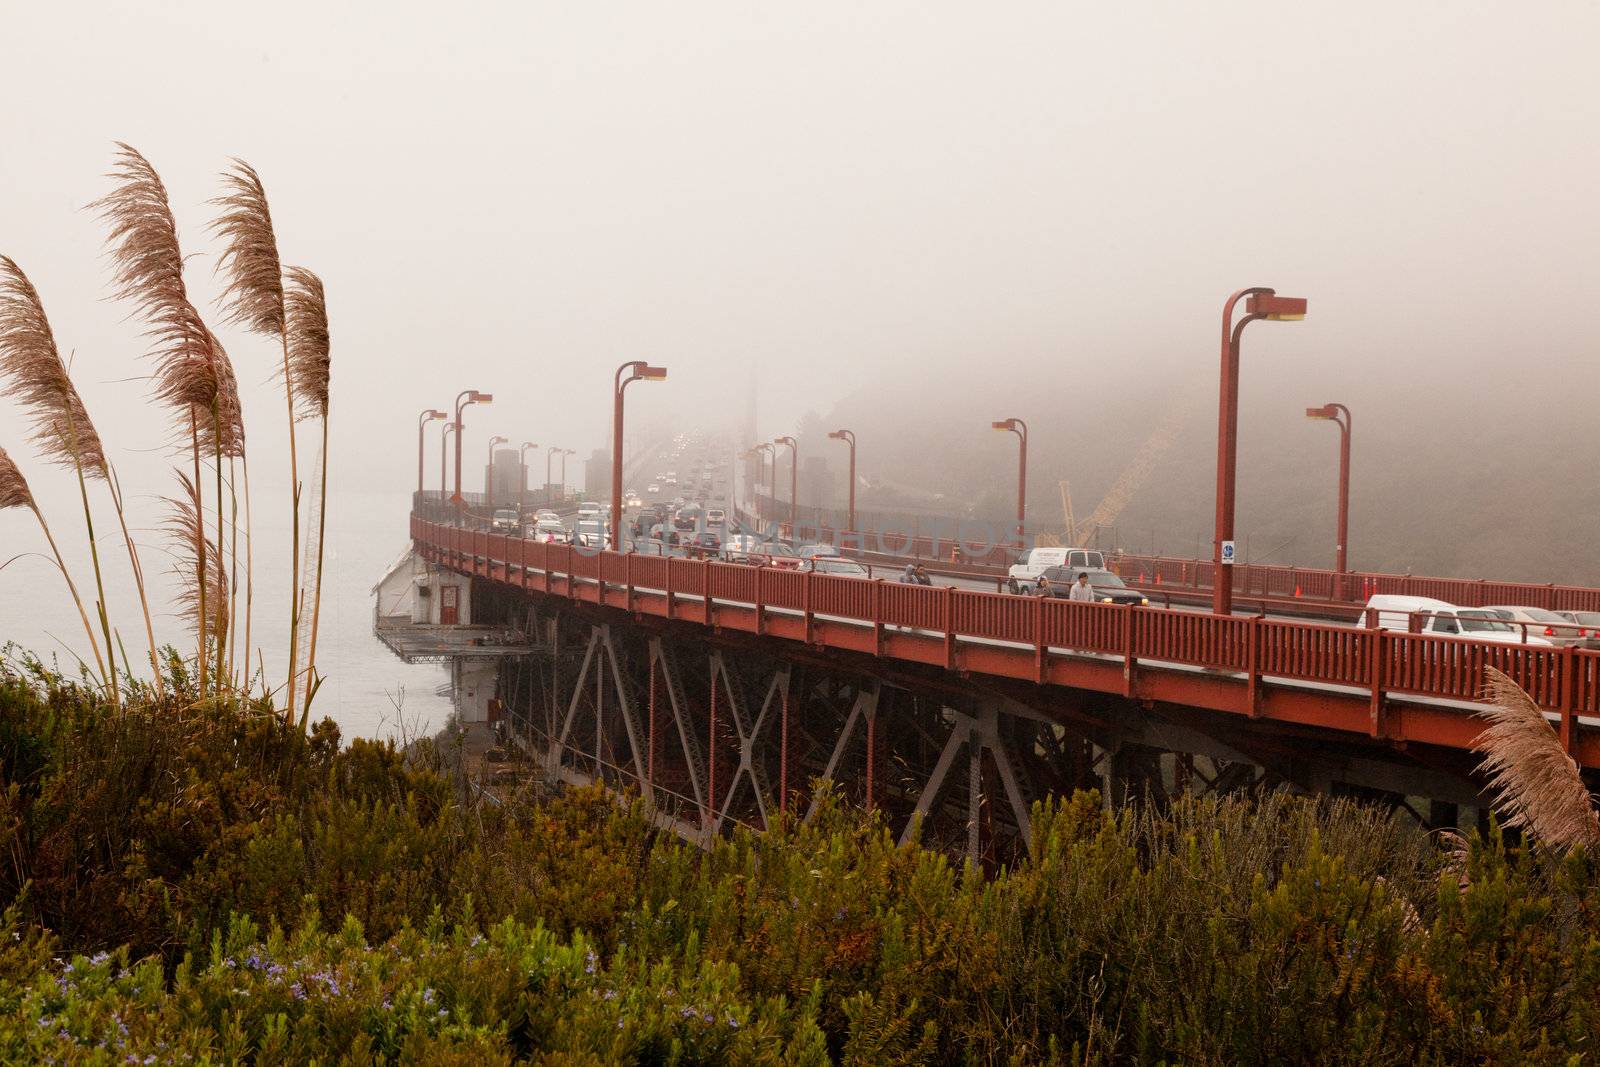 Golden Gate Bridge Vista Point by melastmohican